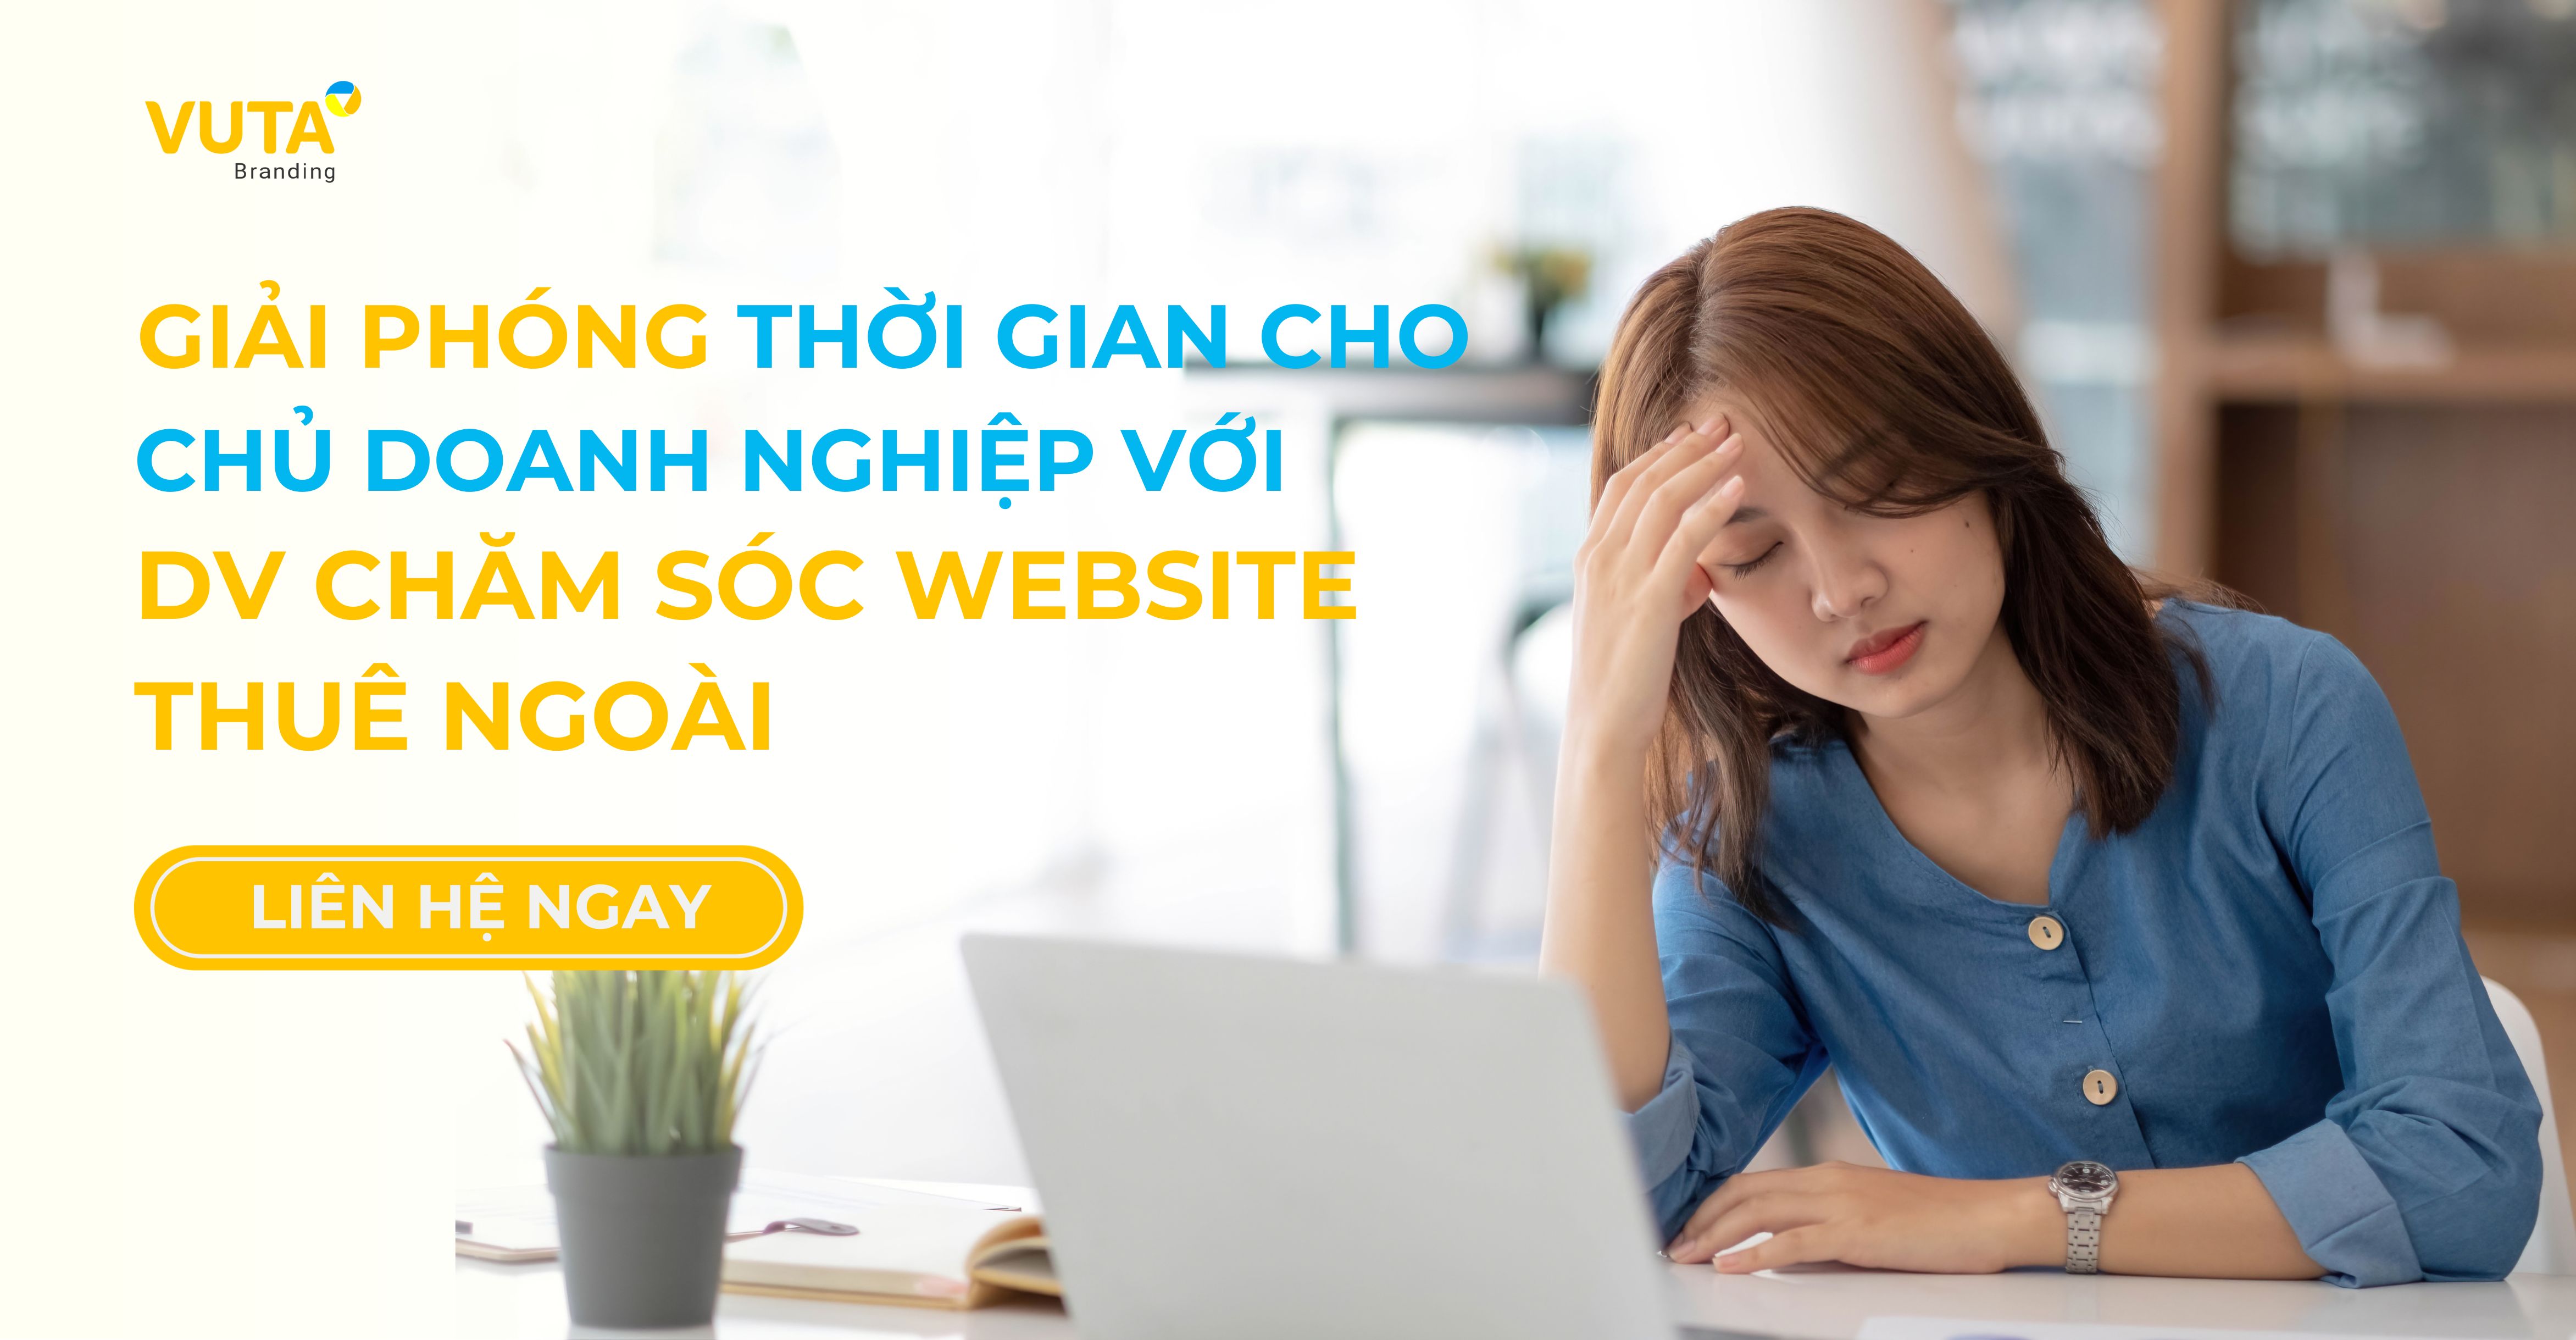 Dịch Vụ Chăm Sóc Website Cam Ranh Chuyên Nghiệp